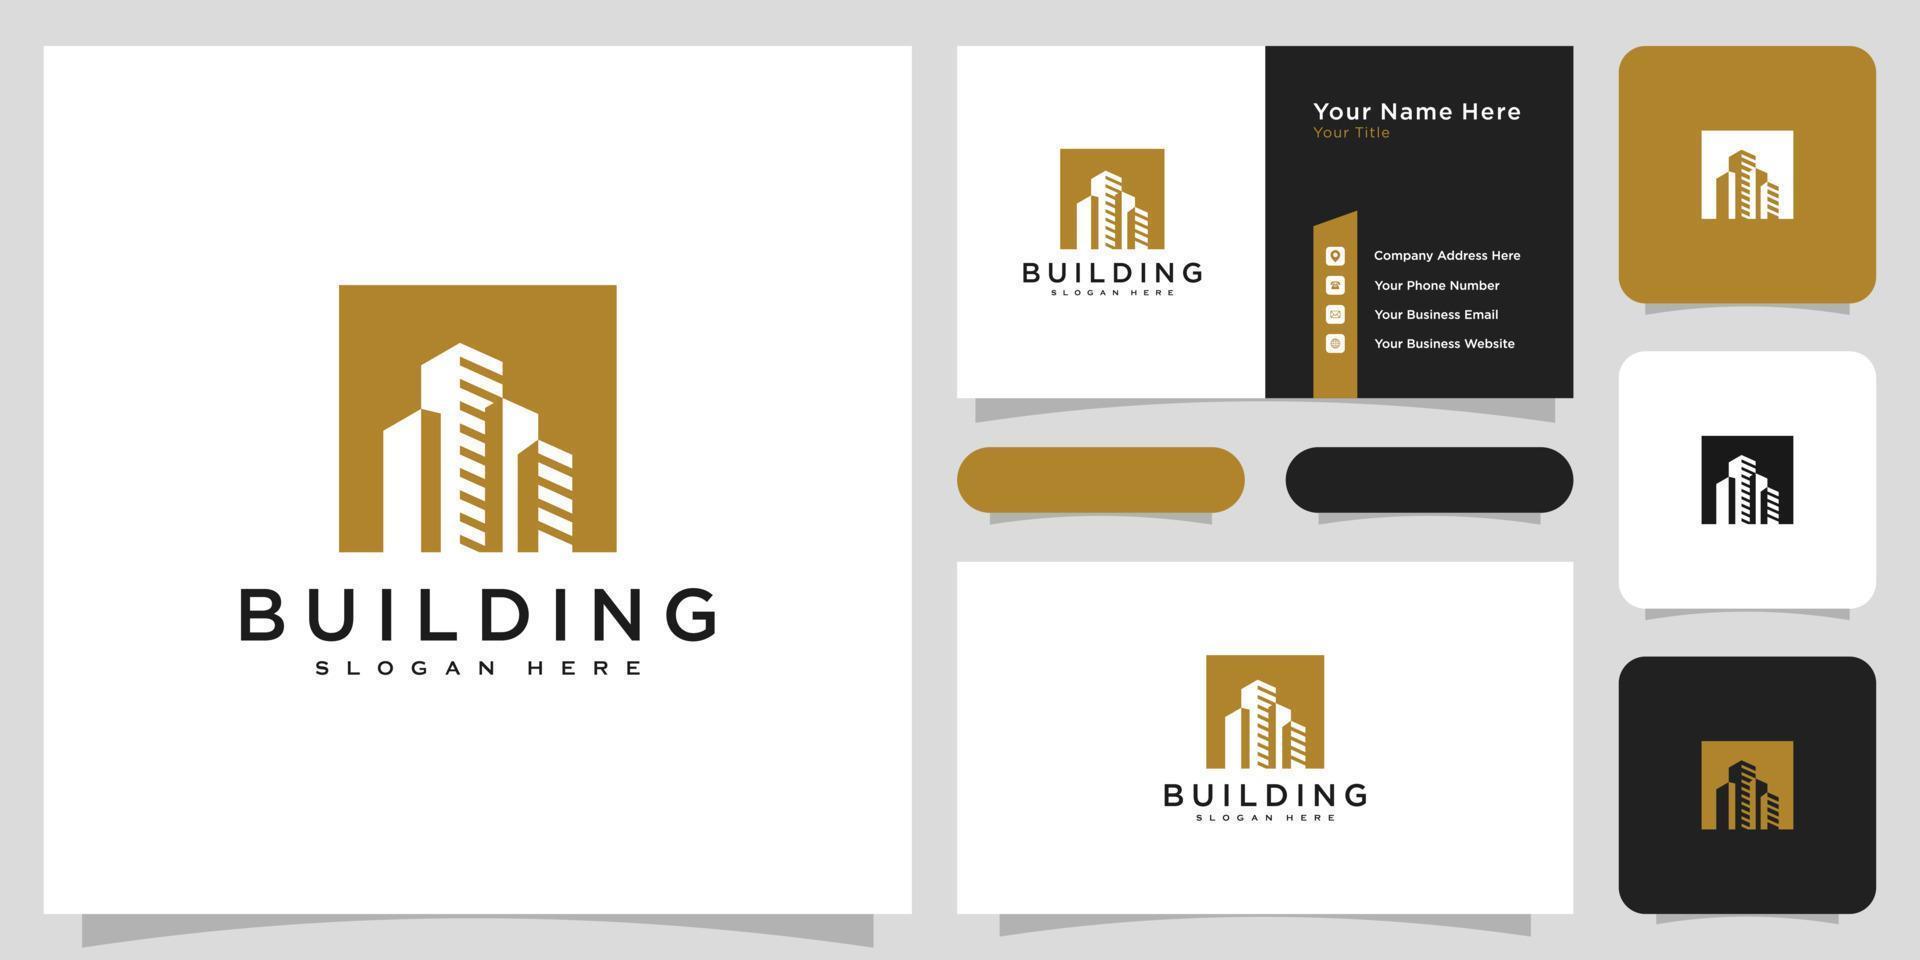 gebouw logo met lijn kunststijl. stadsbouwsamenvatting voor inspiratie voor logo-ontwerp en visitekaartjeontwerp vector